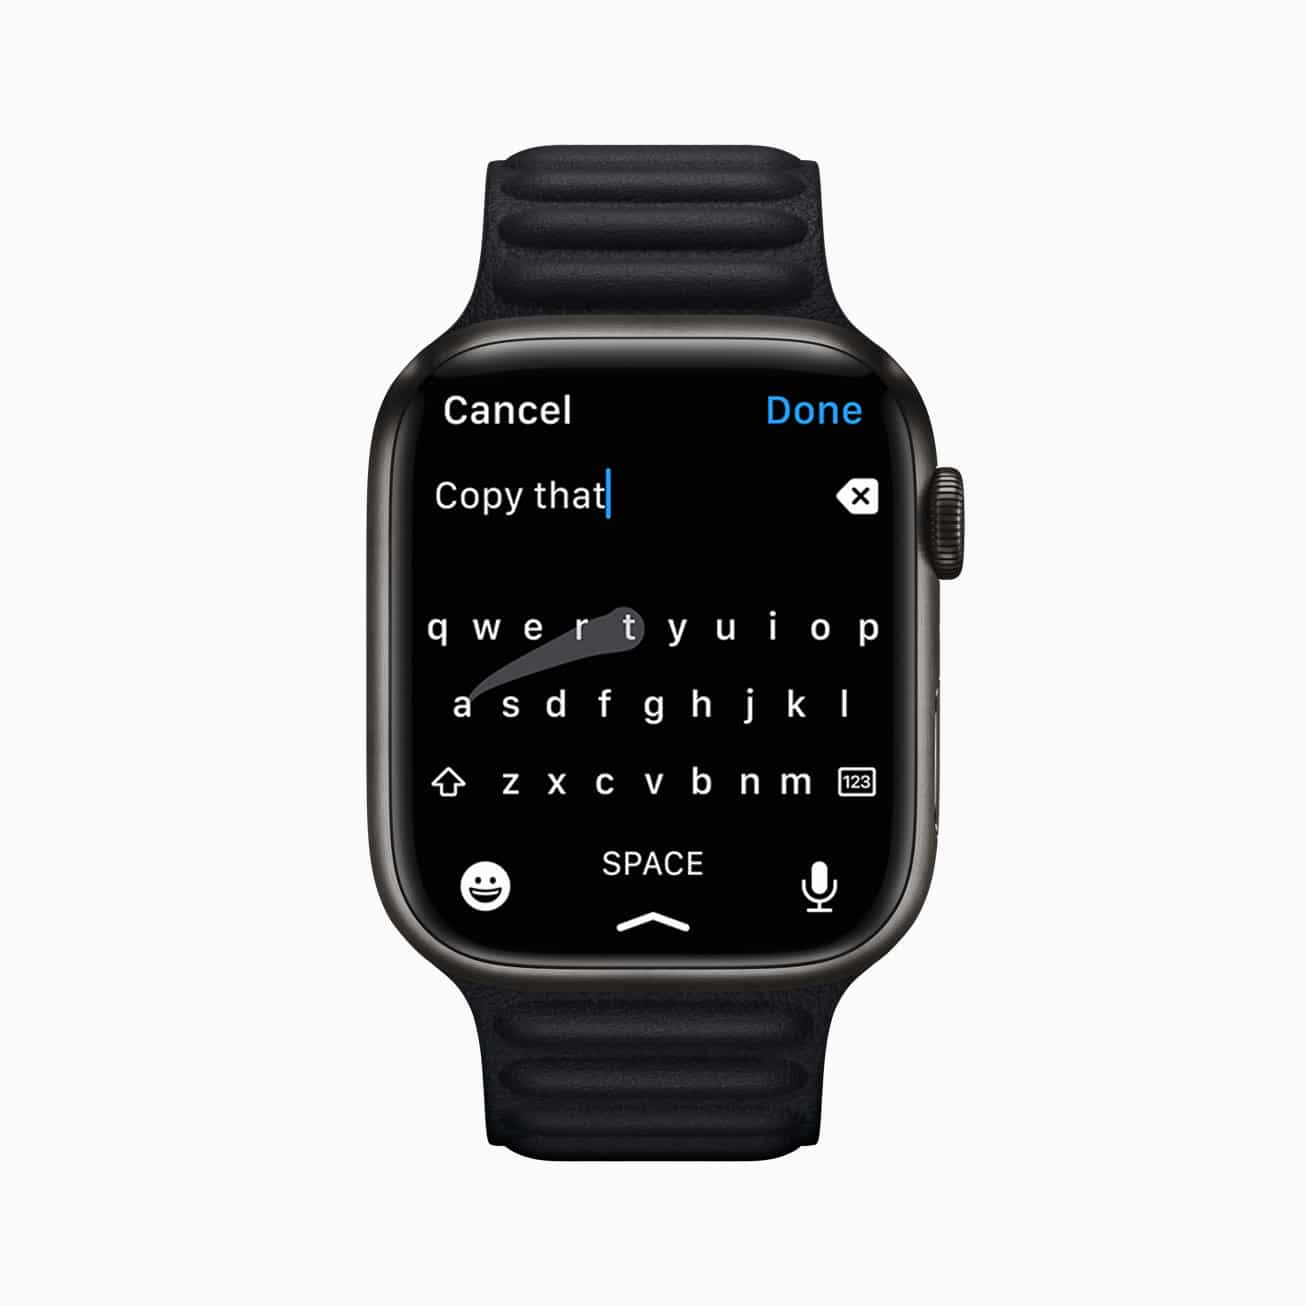 FlickType-Tastaturentwickler verklagt Apple zum Stehlen Apple Watch Tastatur-Idee behauptet wettbewerbswidriges Verhalten 42